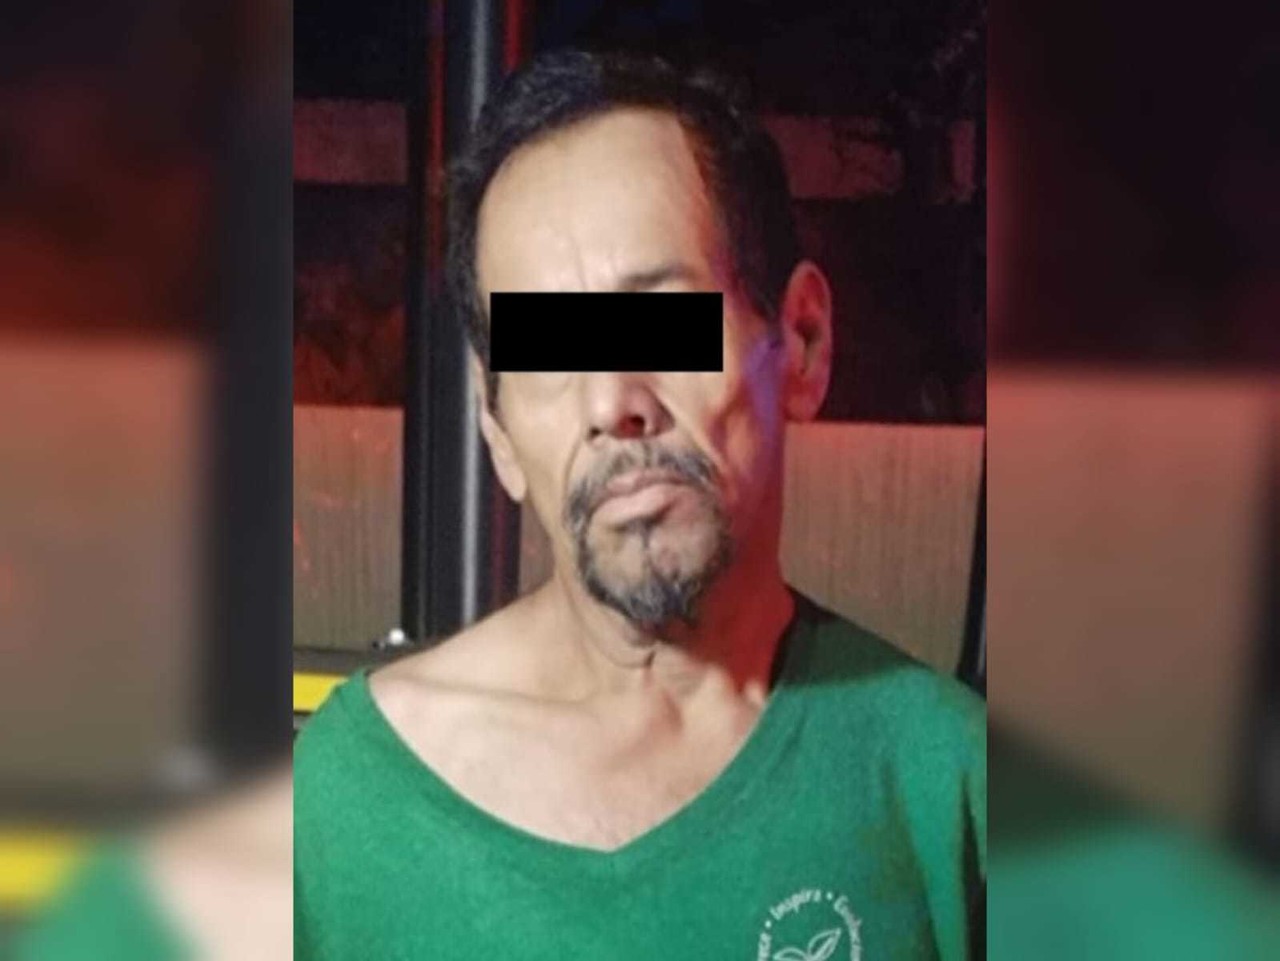 El hombre, habría amenazado con matar a su esposa sosteniendo un cuchillo en una mano y apretándole el cuello con la otra. Foto: Policía de Monterrey.